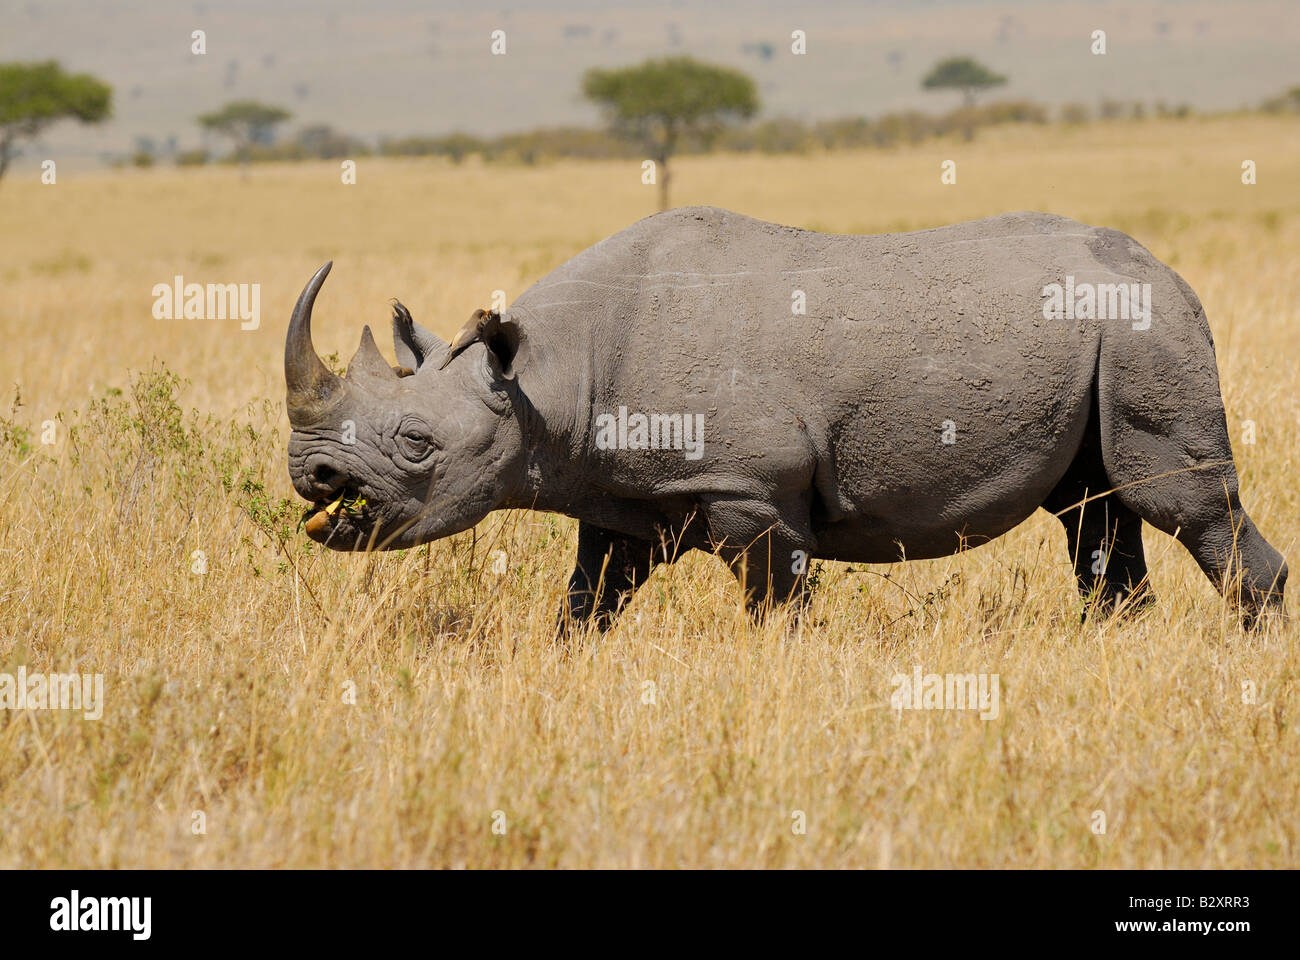 Les rhinocéros noirs, Diceros bicornis, Masai Mara, Kenya, Afrique Banque D'Images